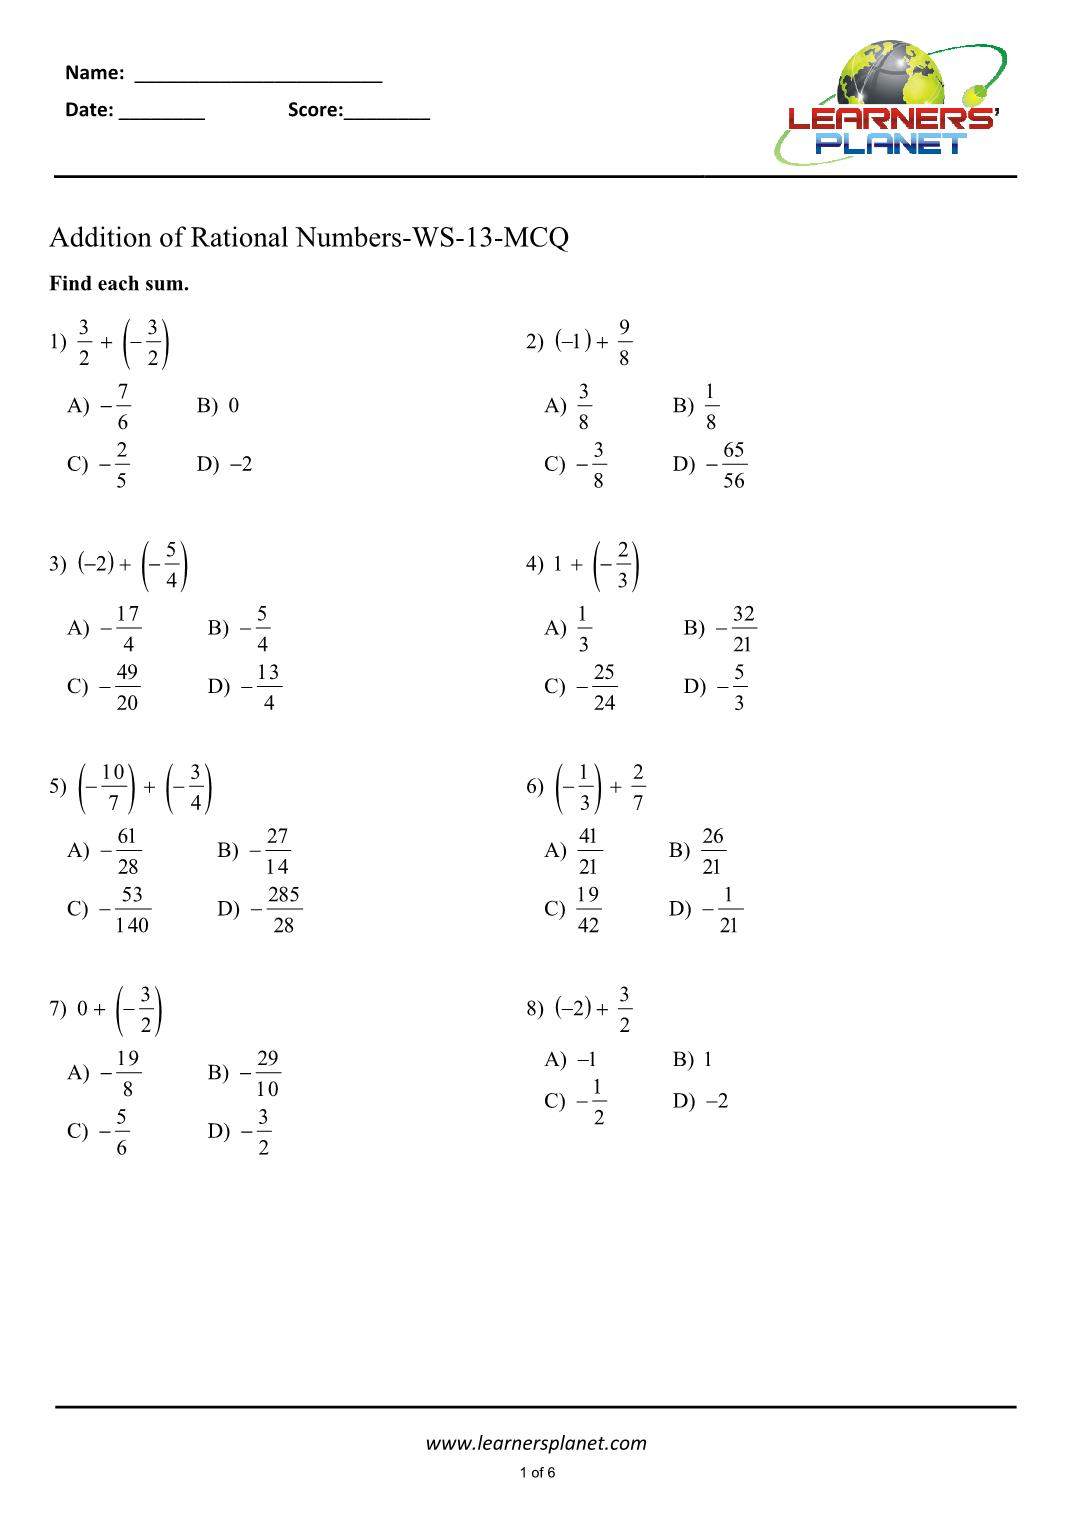 Grade 20 math adding rational number worksheets Regarding Adding Rational Numbers Worksheet